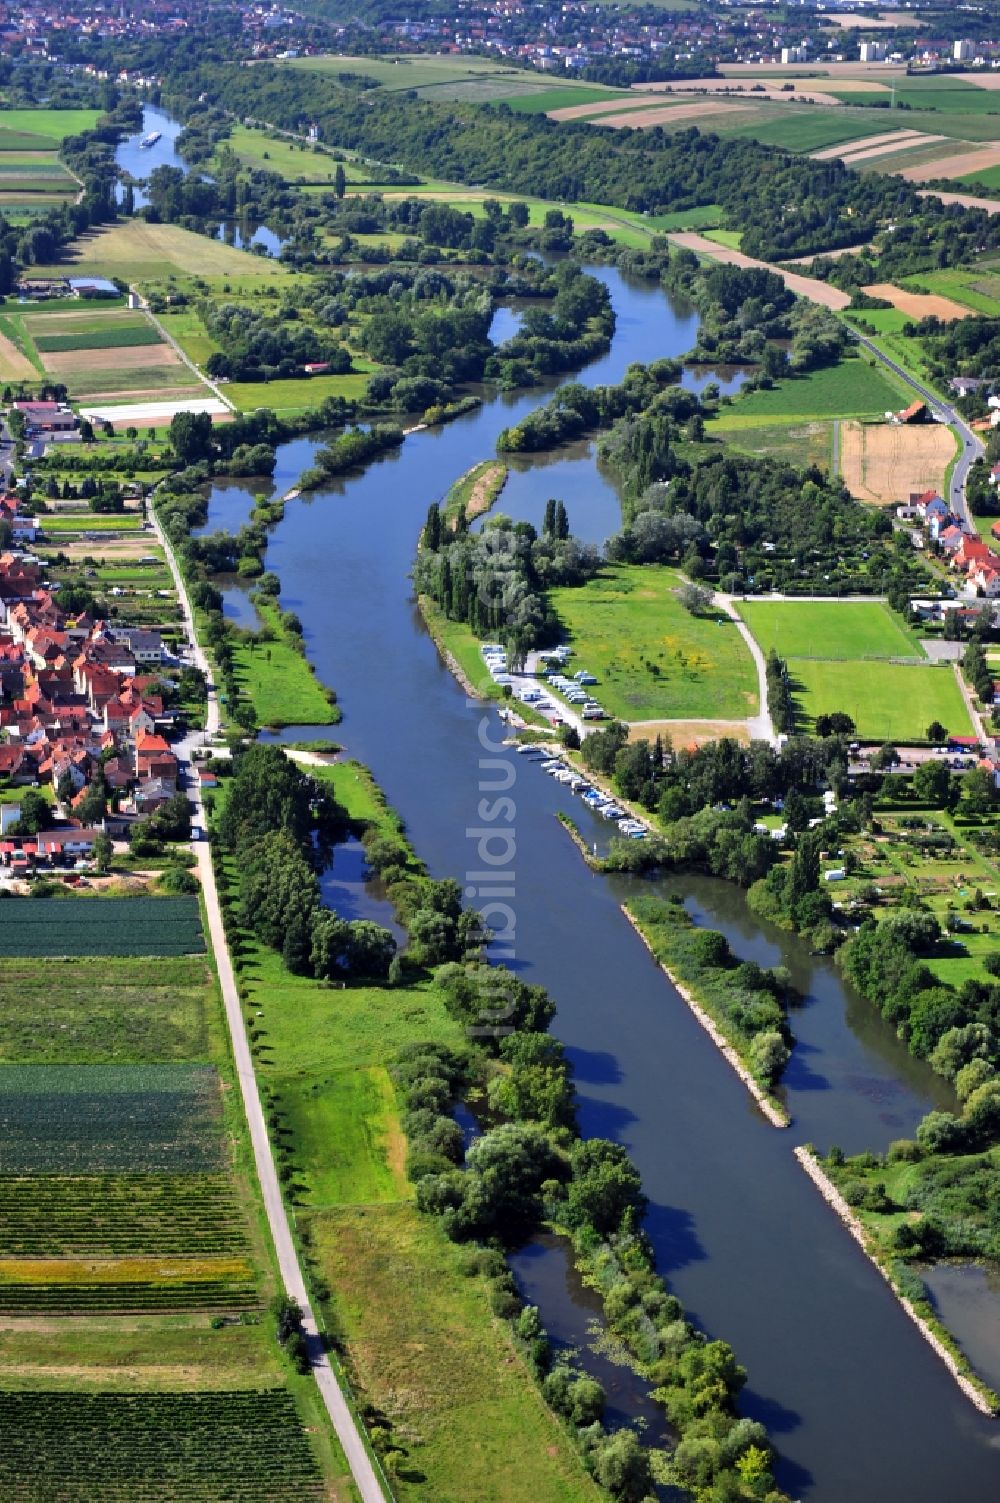 Mainstockheim von oben - Flussverlauf des Main bei Mainstockheim im Bundesland Bayern